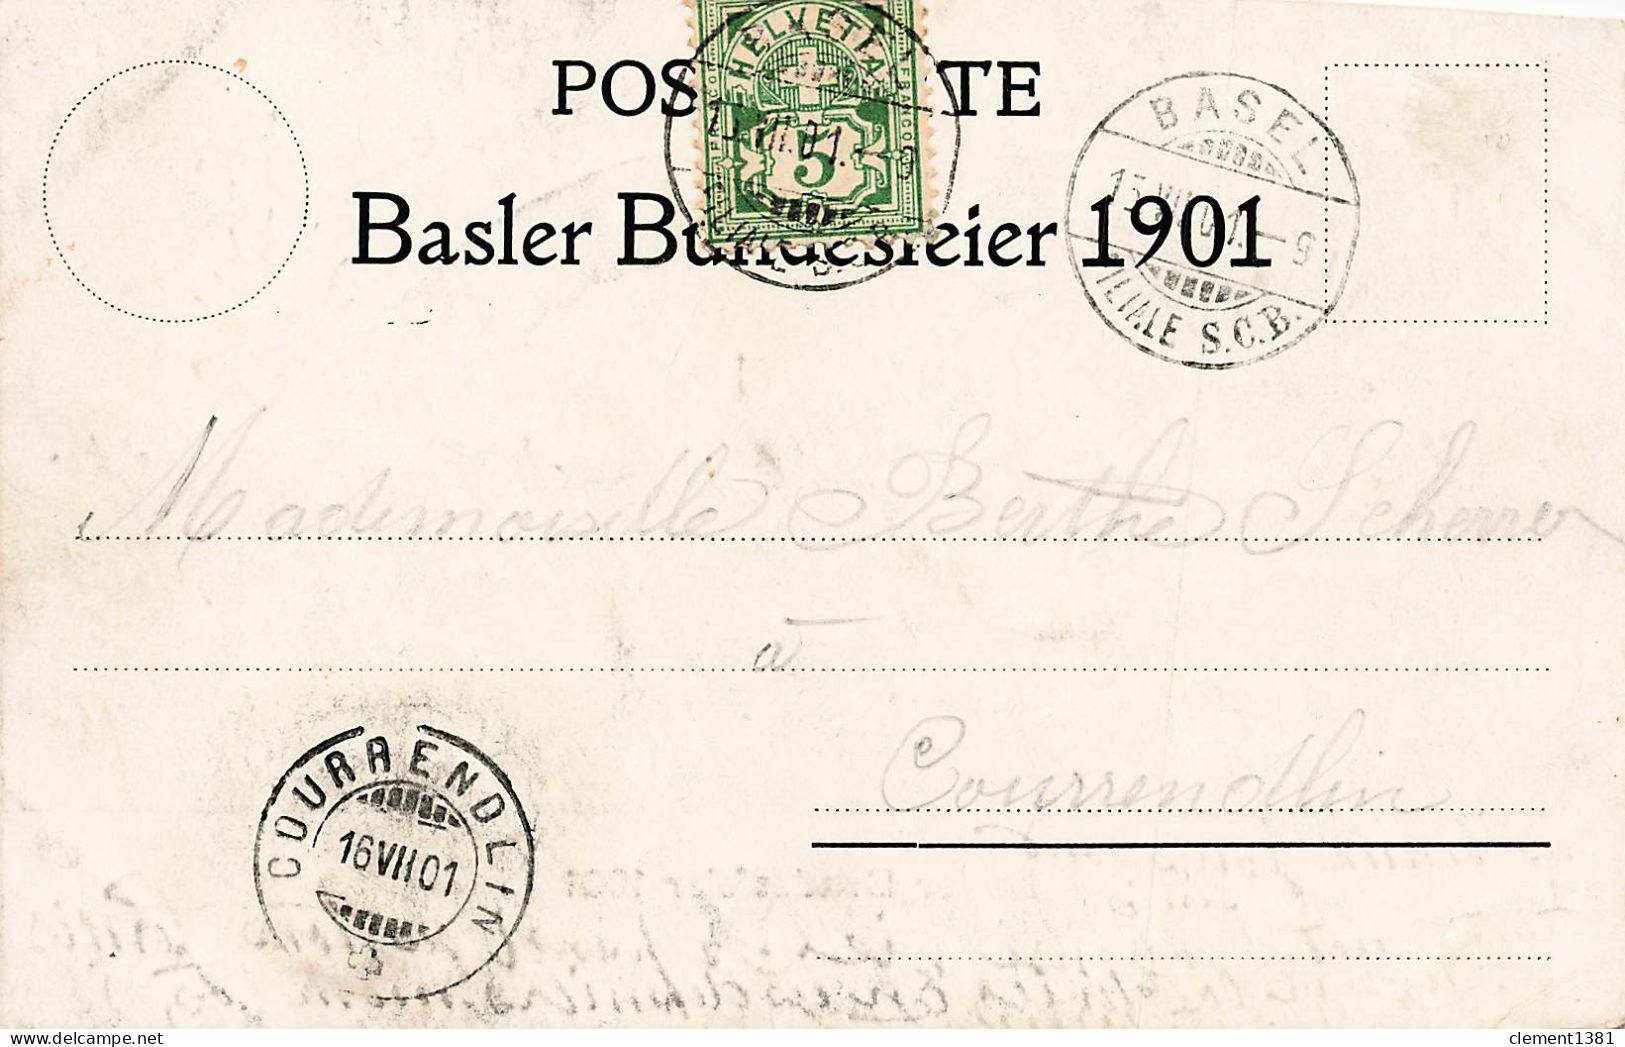 Basler Bundesfeier 1901 - Basel